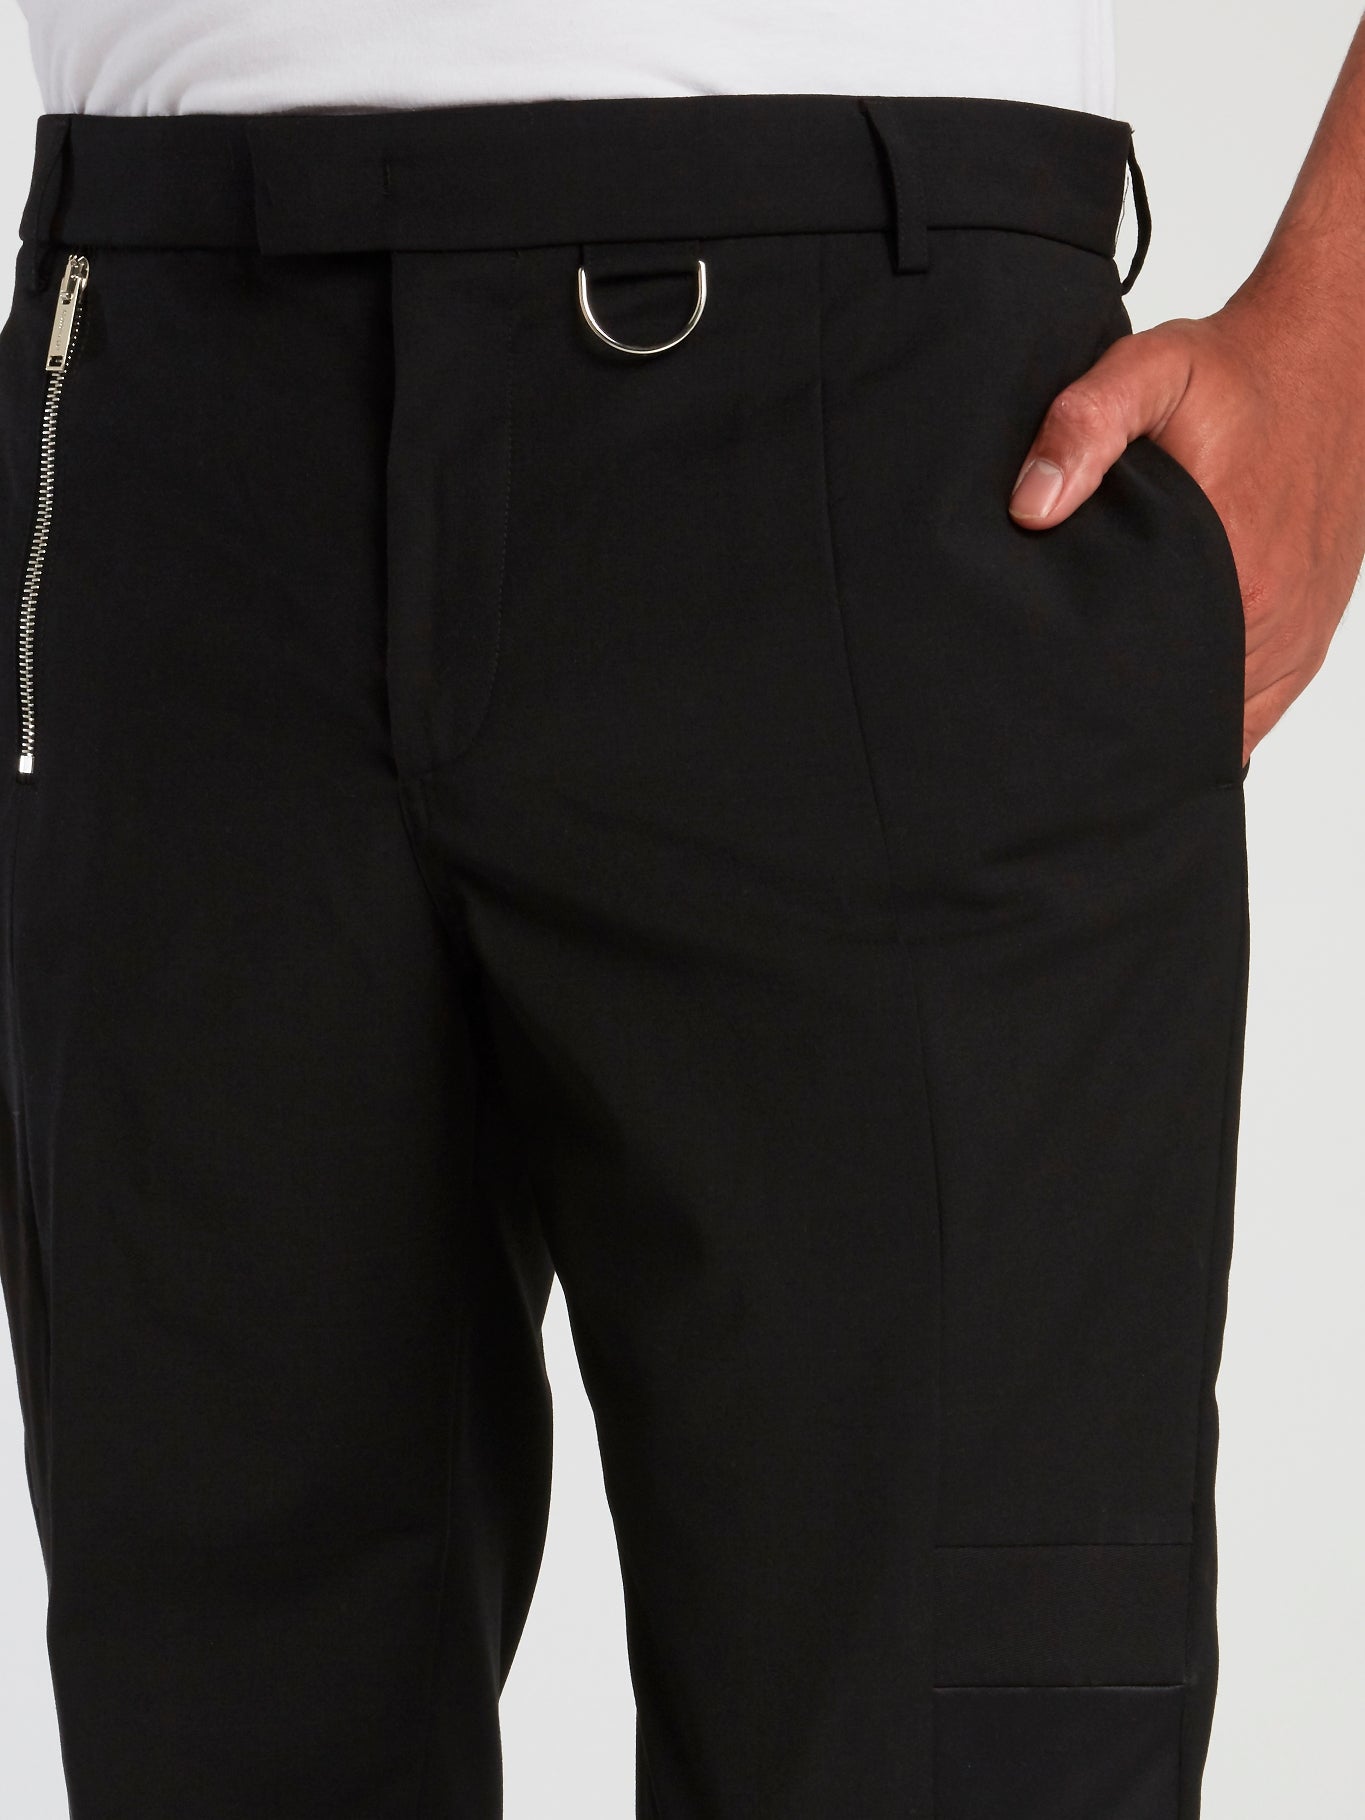 Black Slim Fit Suit Trousers